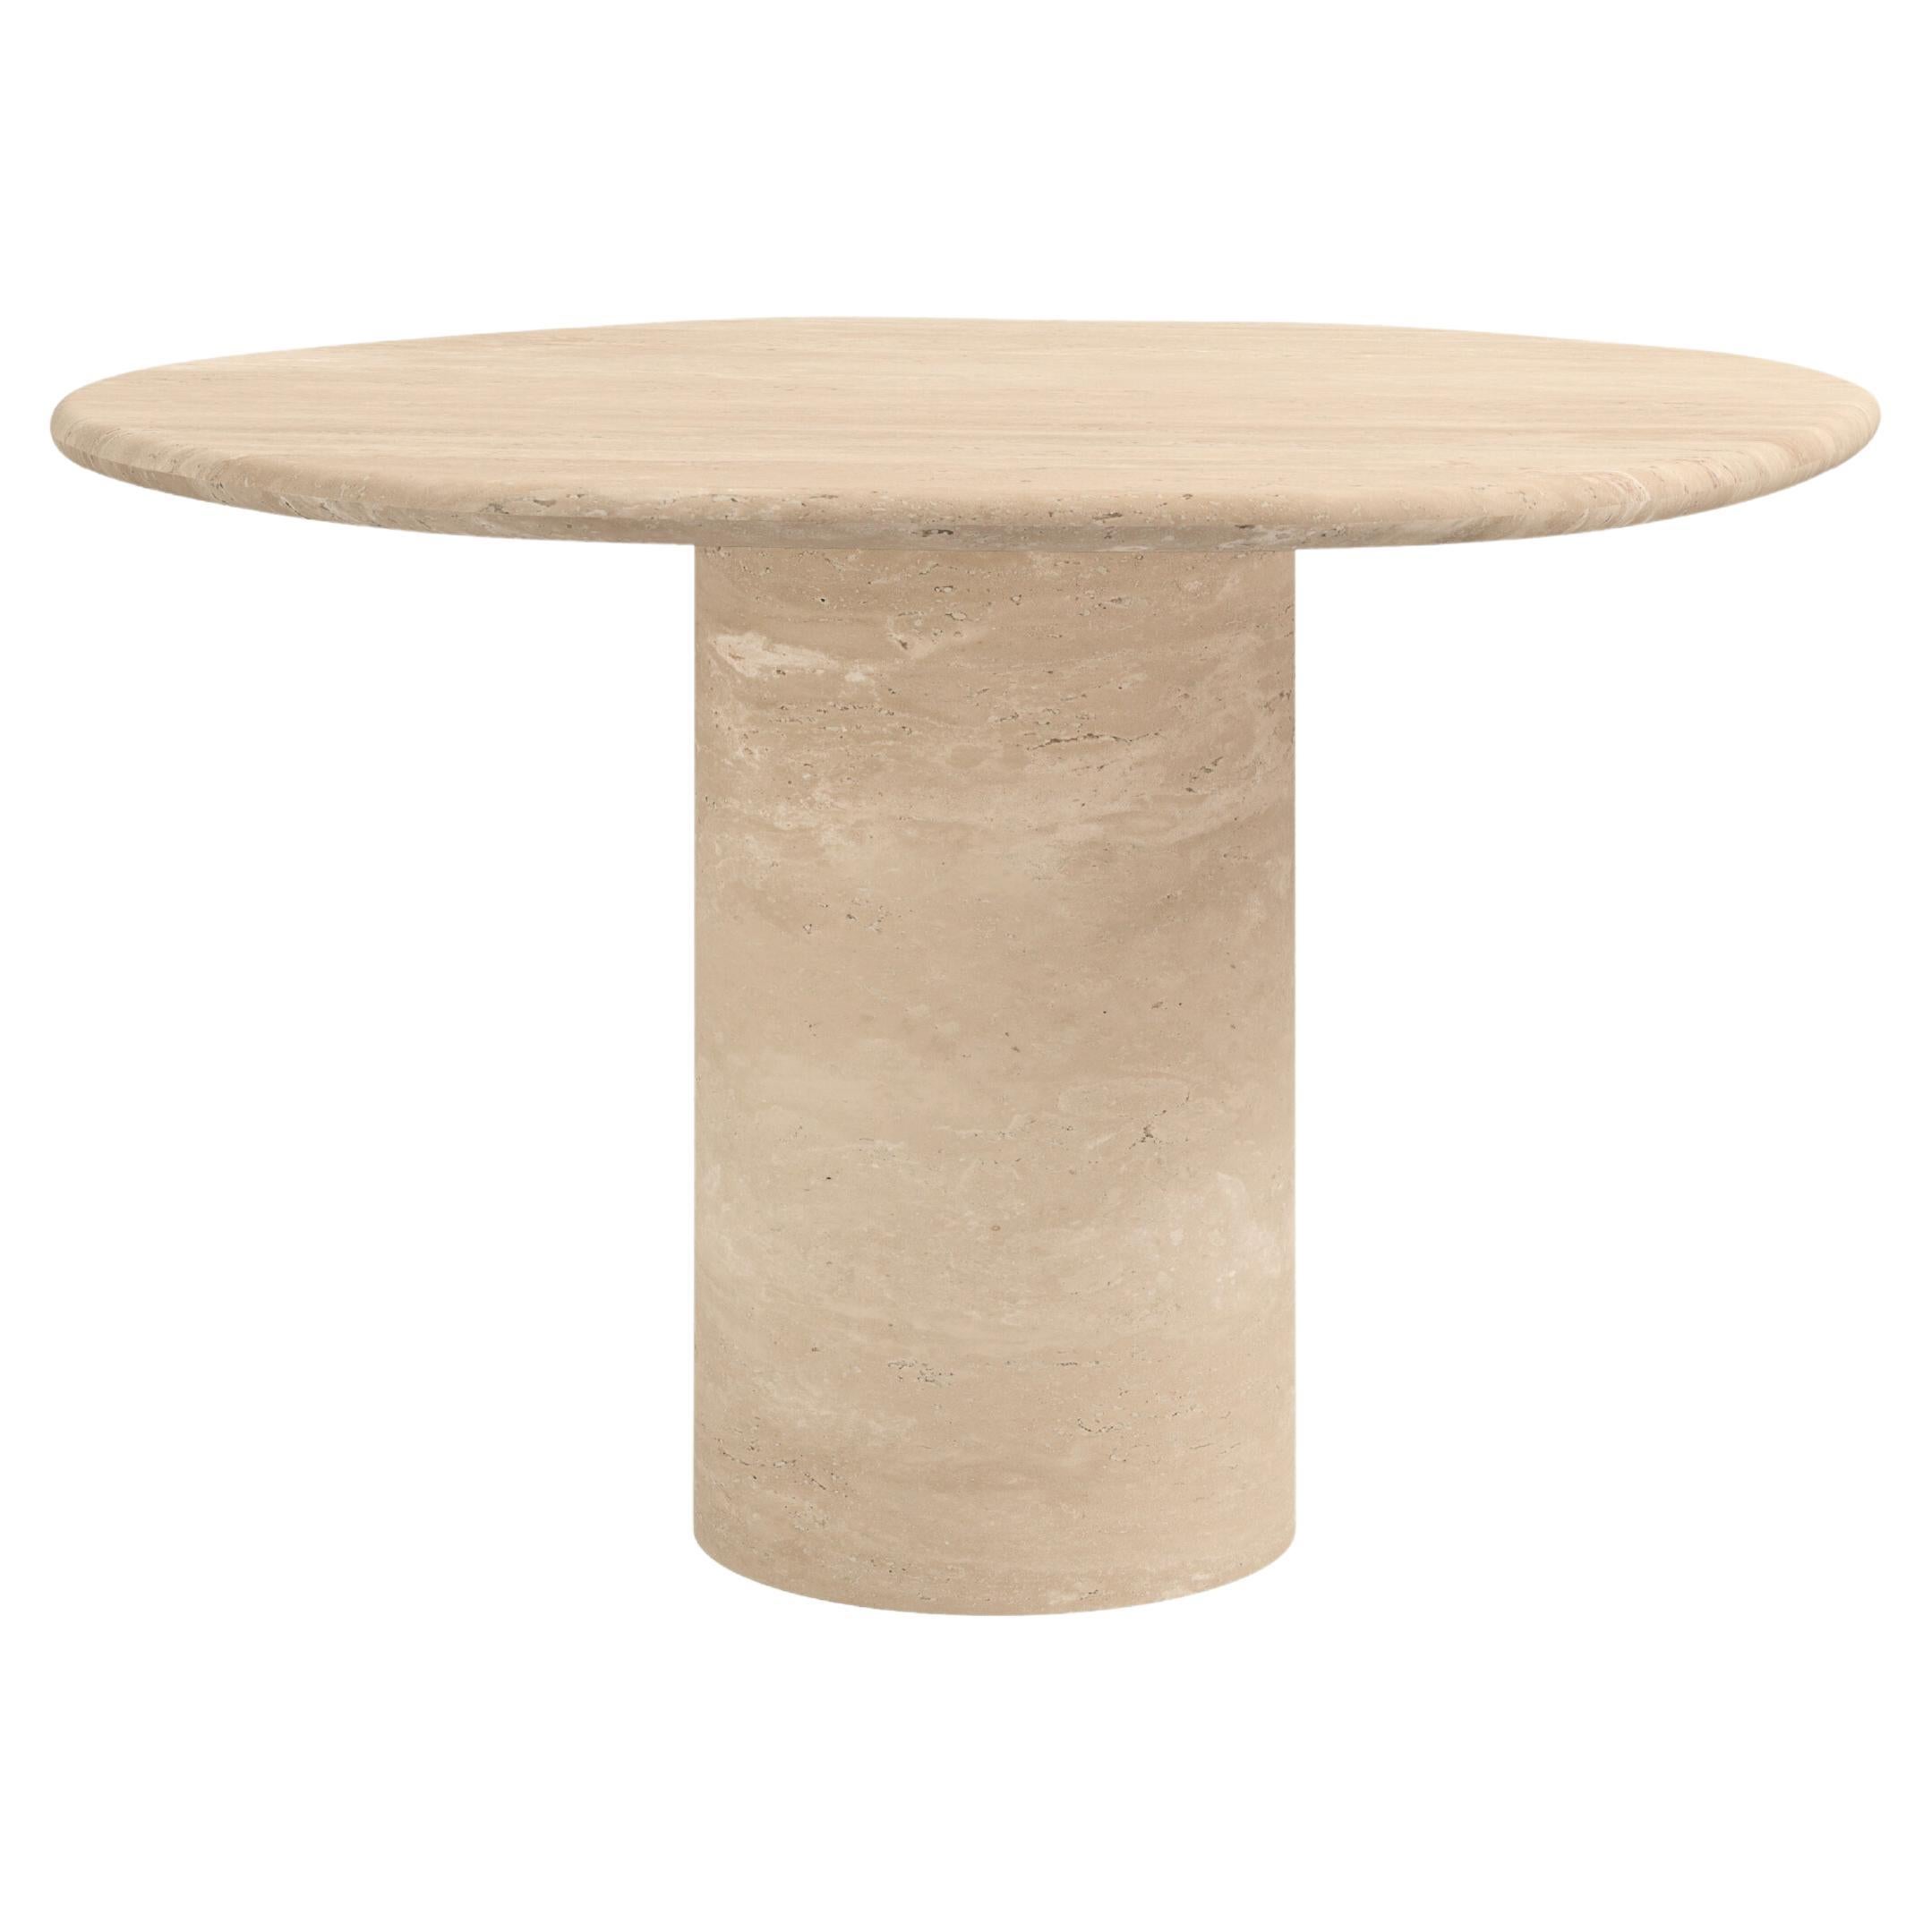 FORM(LA) Lago Round Dining Table 48”L x 48”W x 30”H Travertino Crema VC For Sale